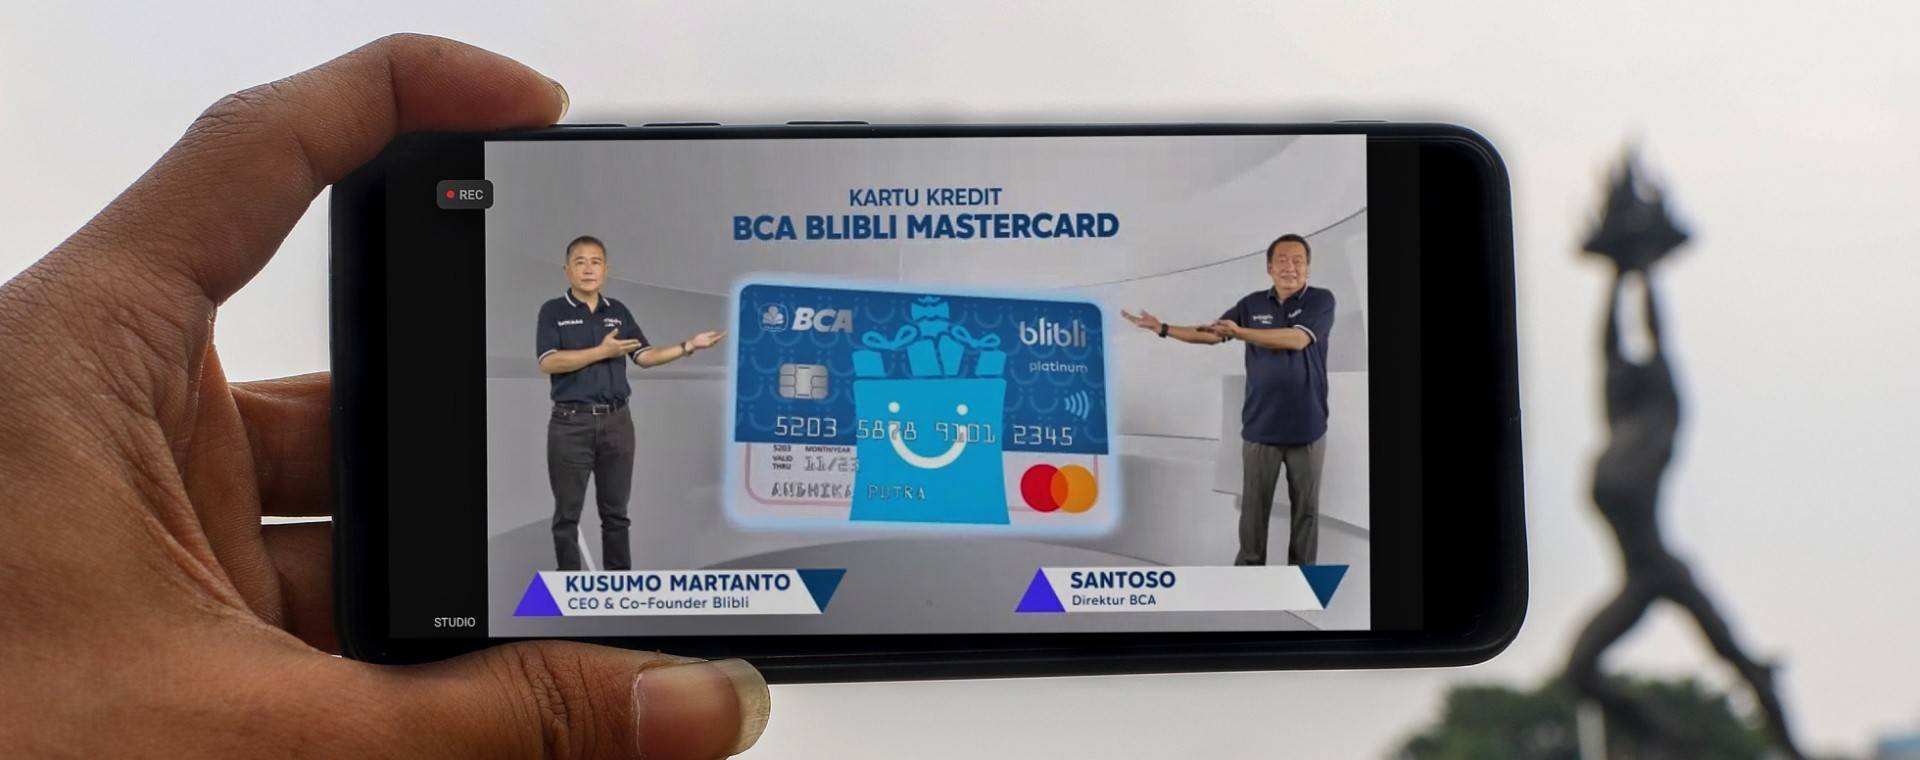 Tampilan layar menampilkan CEO & CO-Founder Blibli, Kusumo Martanto (kiri) bersama dengan Direktur PT Bank Central Asia Tbk. (BBCA) Santoso (kanan) saat peluncuran Kartu Kredit BCA Blibli Mastercard di Jakarta, Senin (11/10/2021)./Bisnis - Eusebio Chrysnamurti